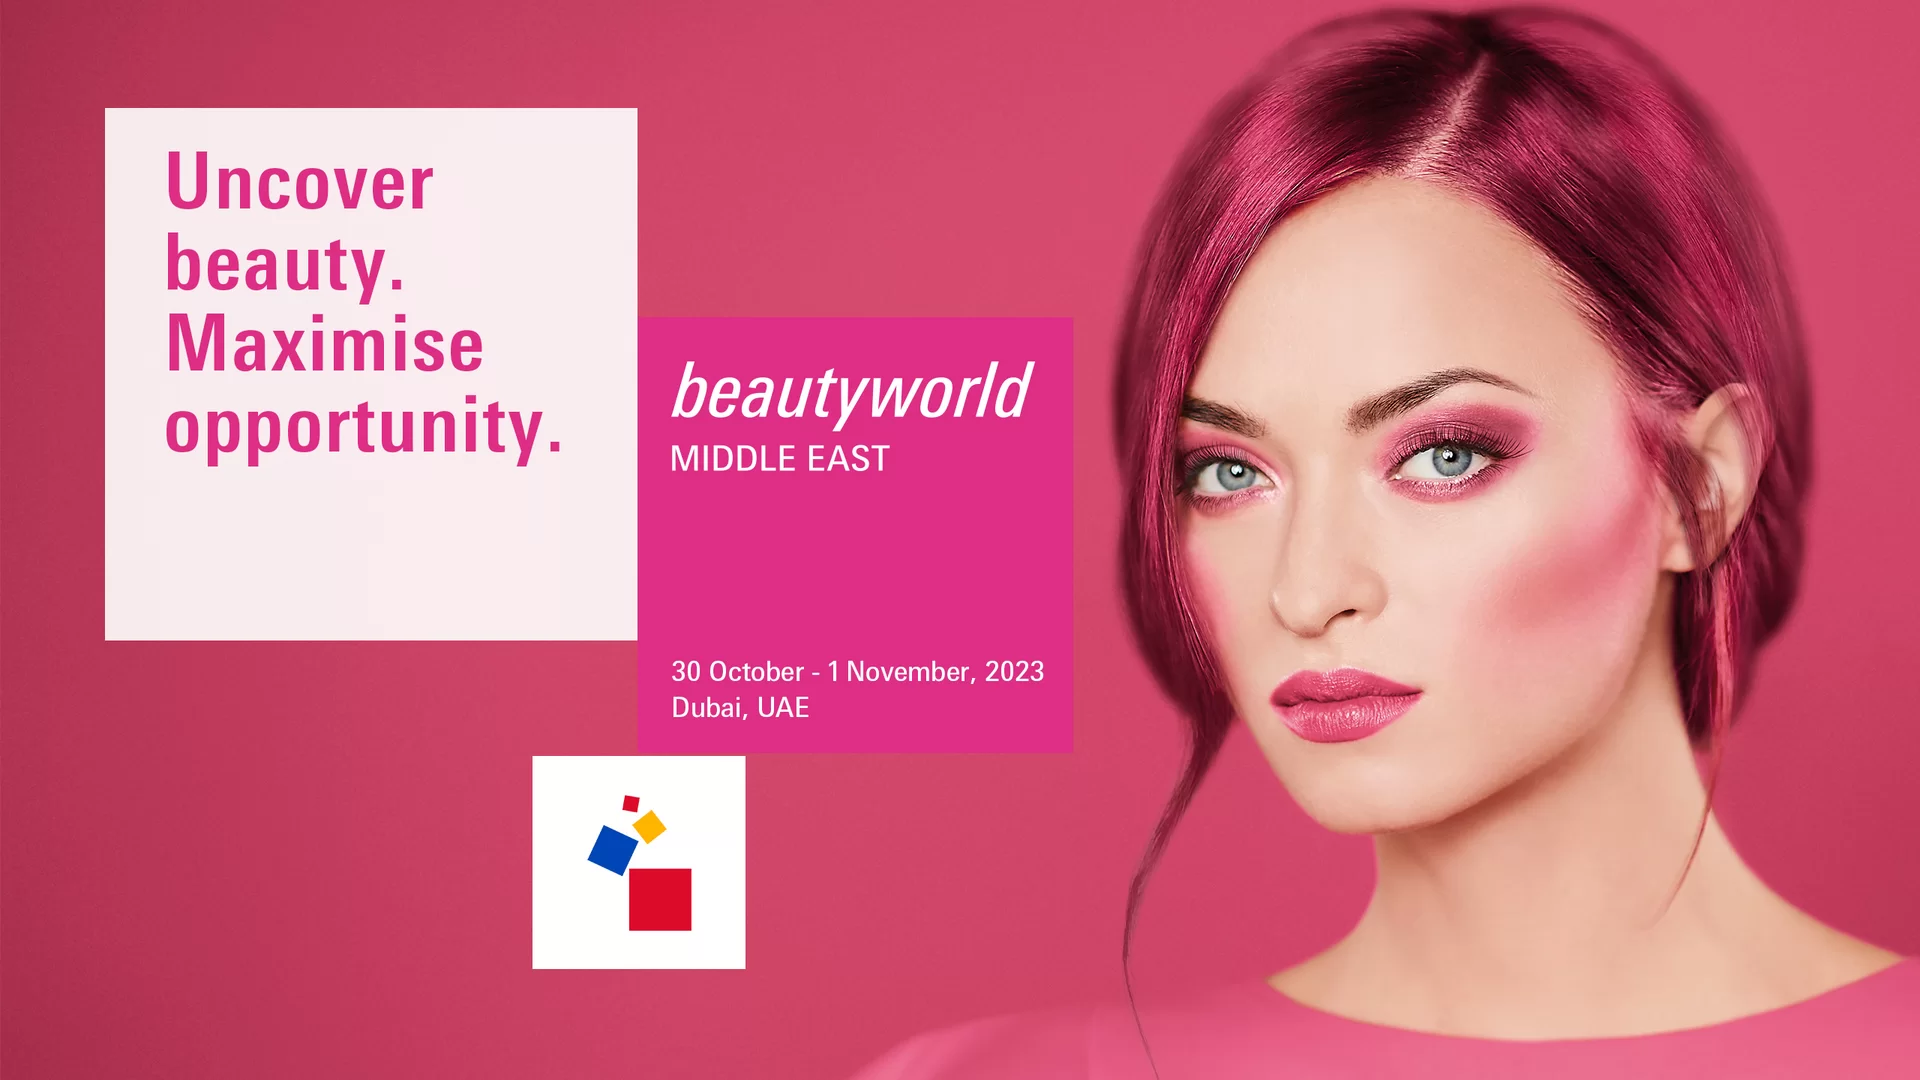 중동 최대 규모 코스메틱 국제 박람회, UAE 두바이 뷰티월드 미들 이스트(Beautyworld Middle East)